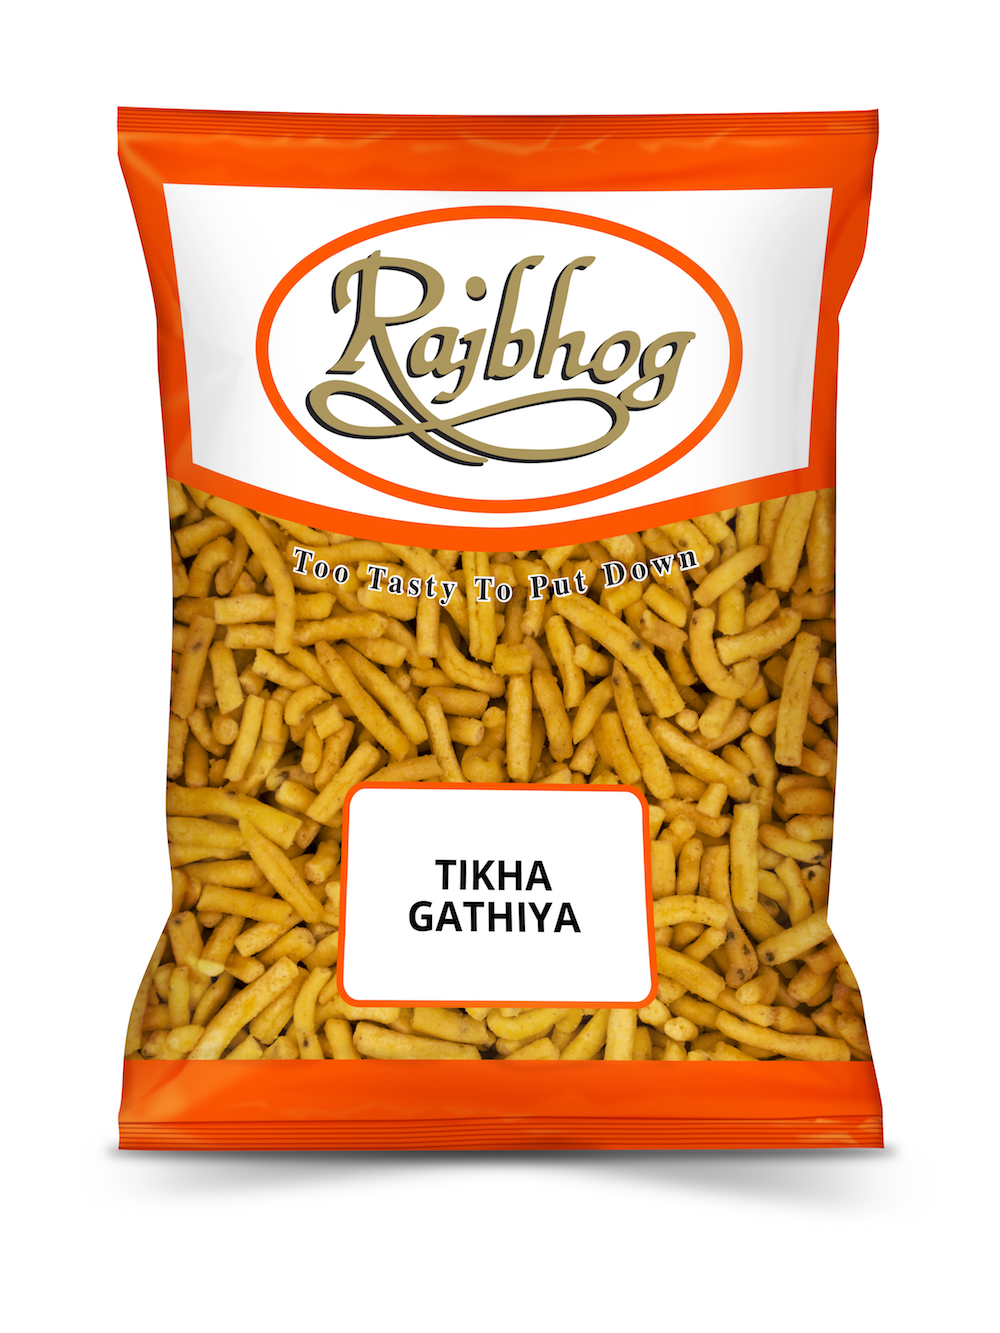 Tikha Gathiya